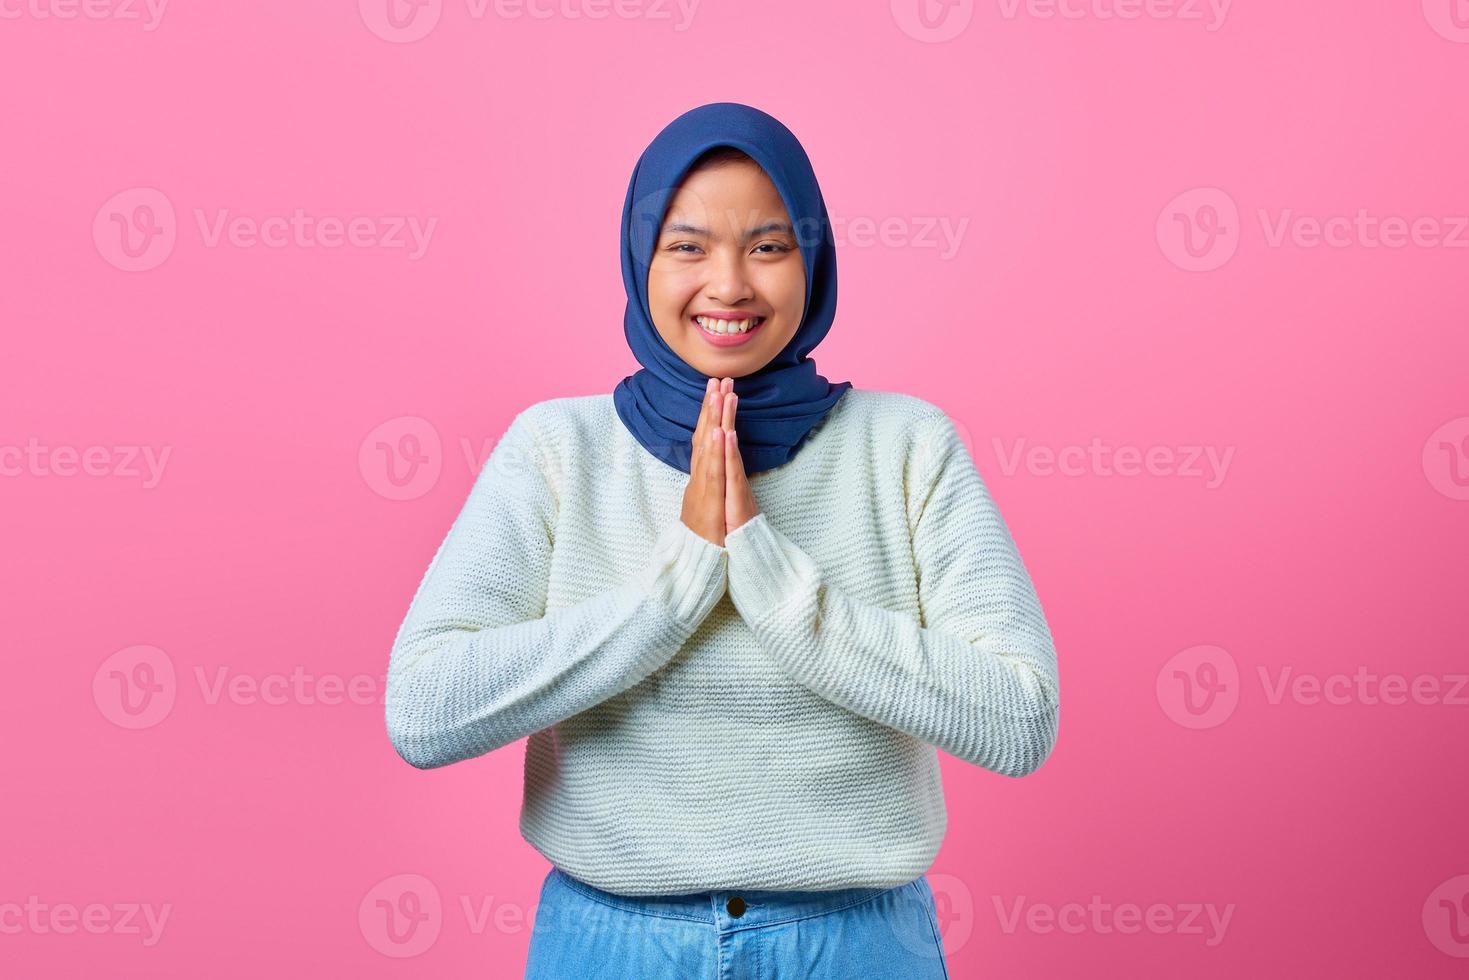 ritratto di giovane donna asiatica sorridente che mostra gesto di preghiera su sfondo rosa foto